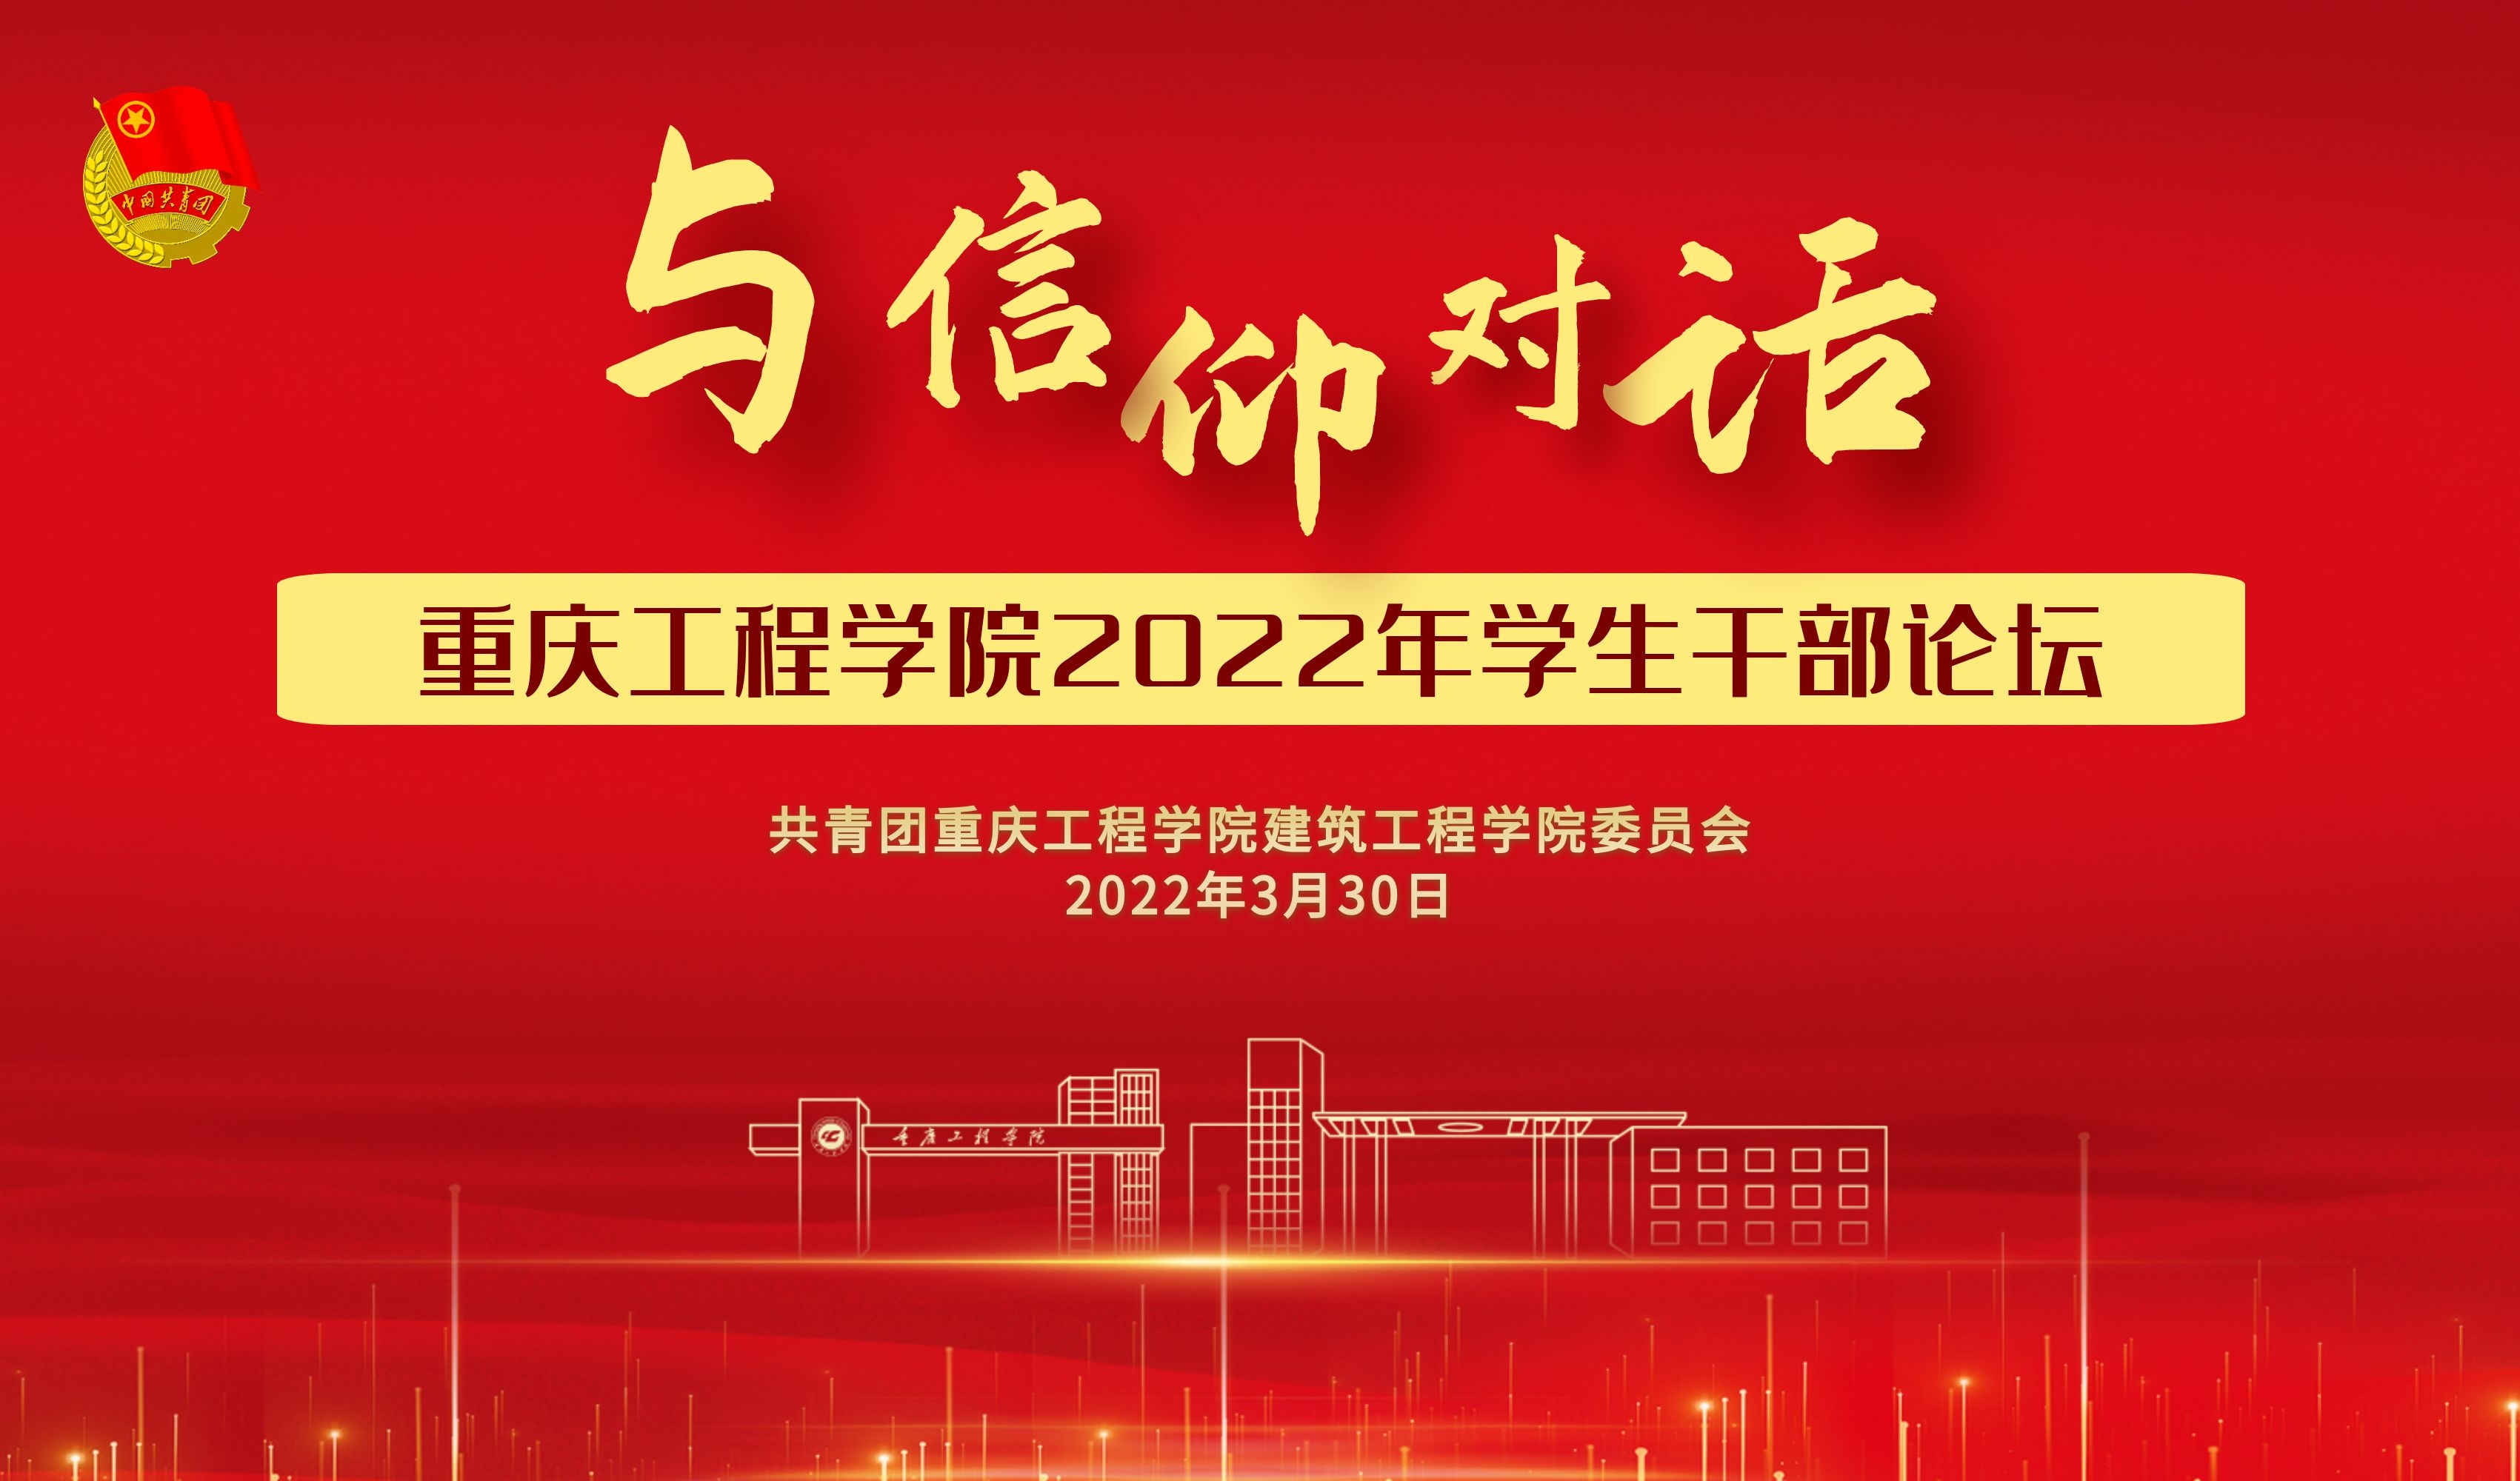 2022重庆工程学院学生干部论坛 “与信仰对话”（建筑工程学院分论坛）成功举办 